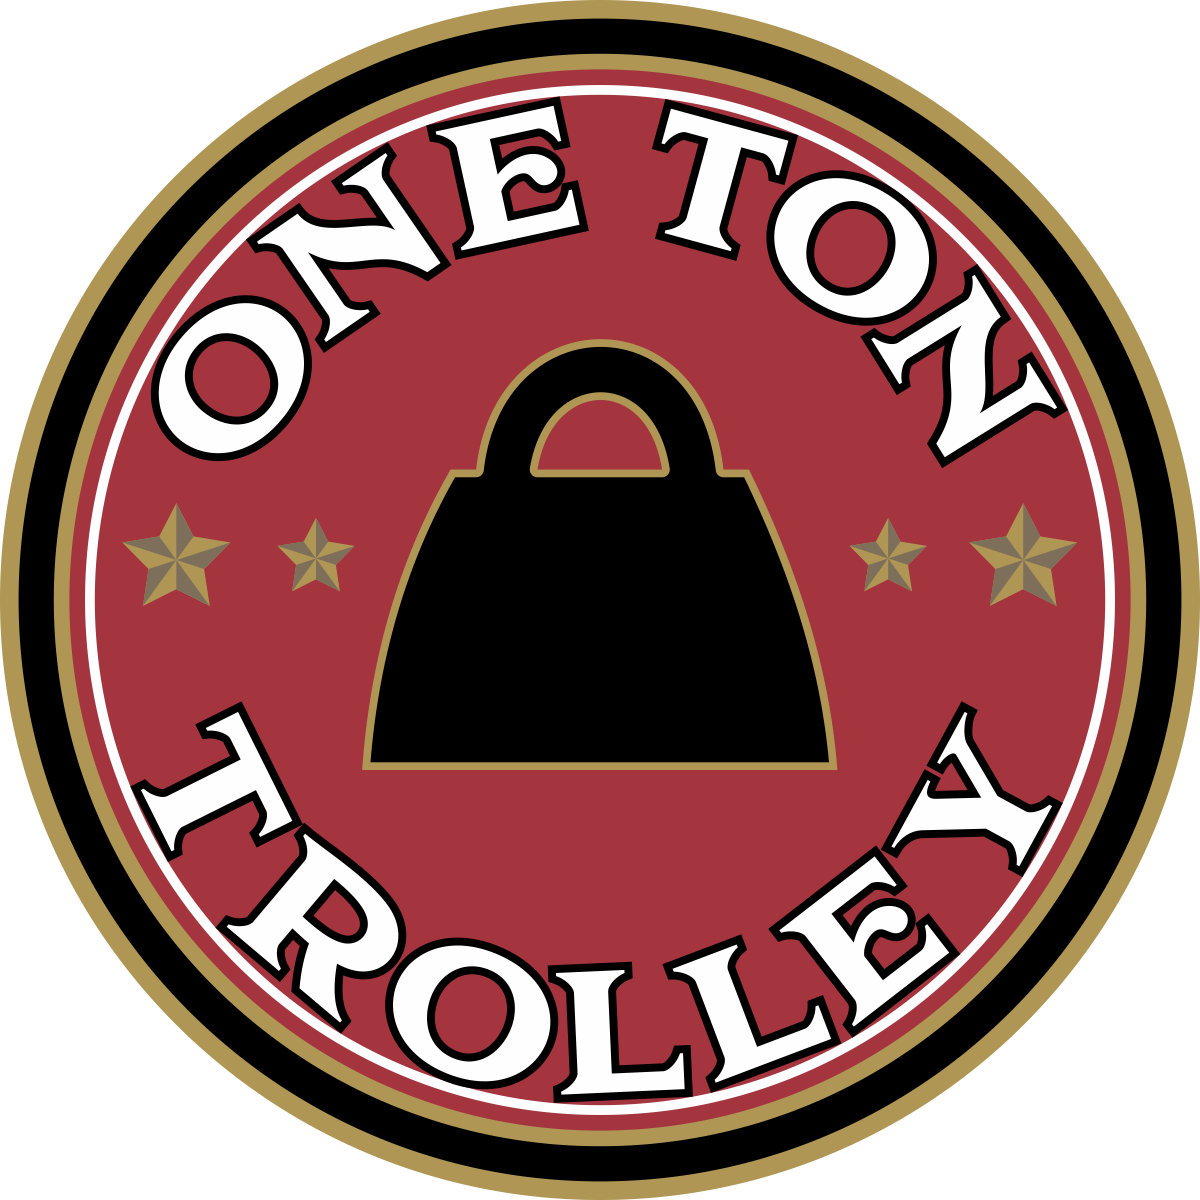 One Ton Trolley